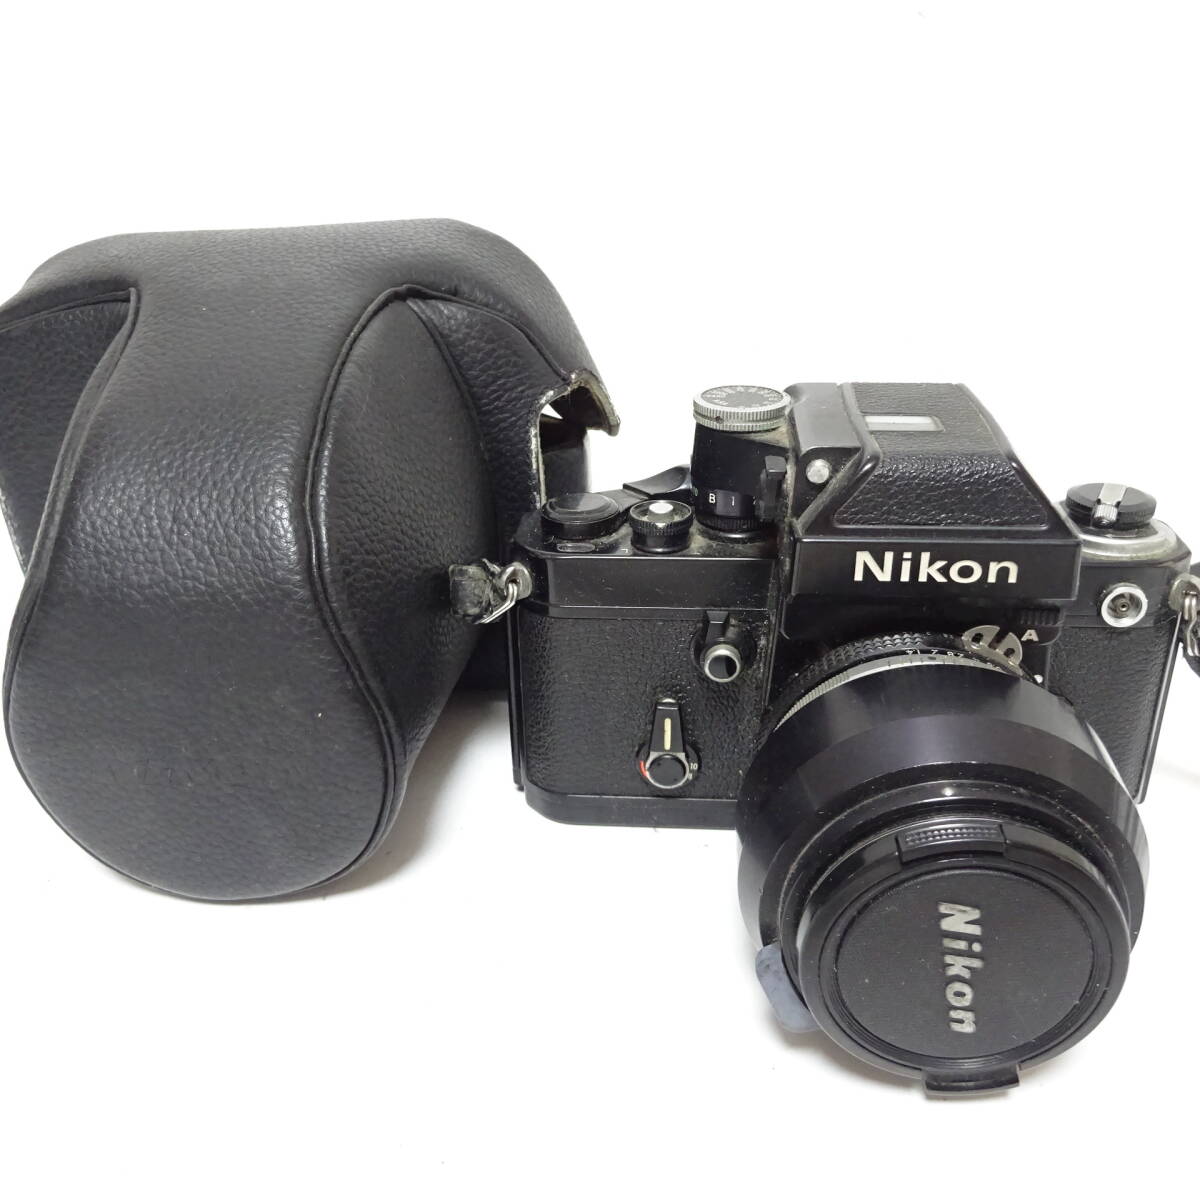 ニコン フィルム一眼カメラ 50mm 1:1.4 レンズ ケース劣化粉吹きあり Nikon 動作未確認 ジャンク品 80サイズ発送 KK-2629064-187-mrrz_画像1